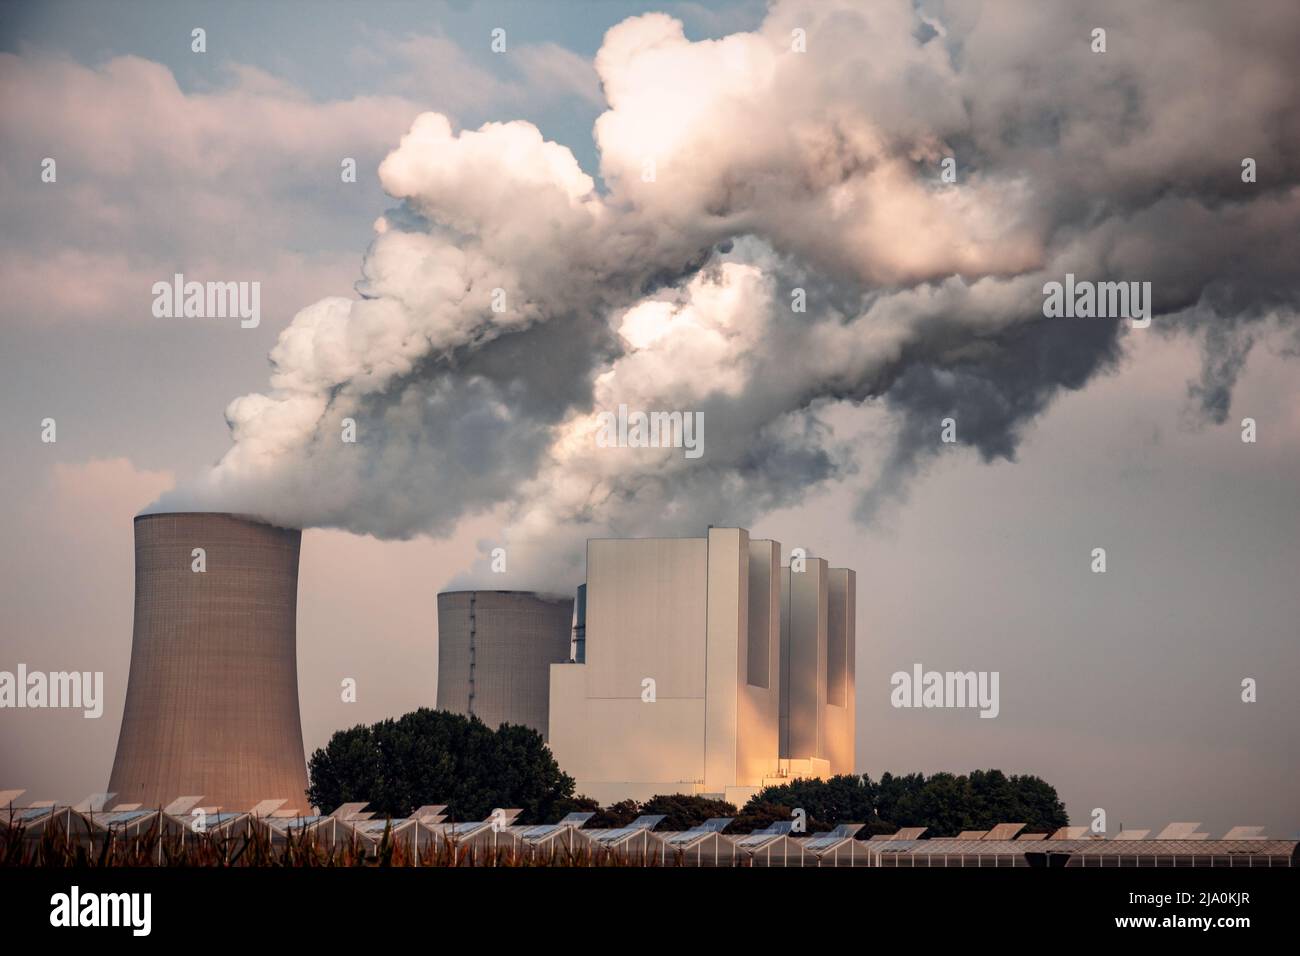 Las emisiones de la chimenea de la fábrica de la planta de energía causan la contaminación del aire. Foto de stock